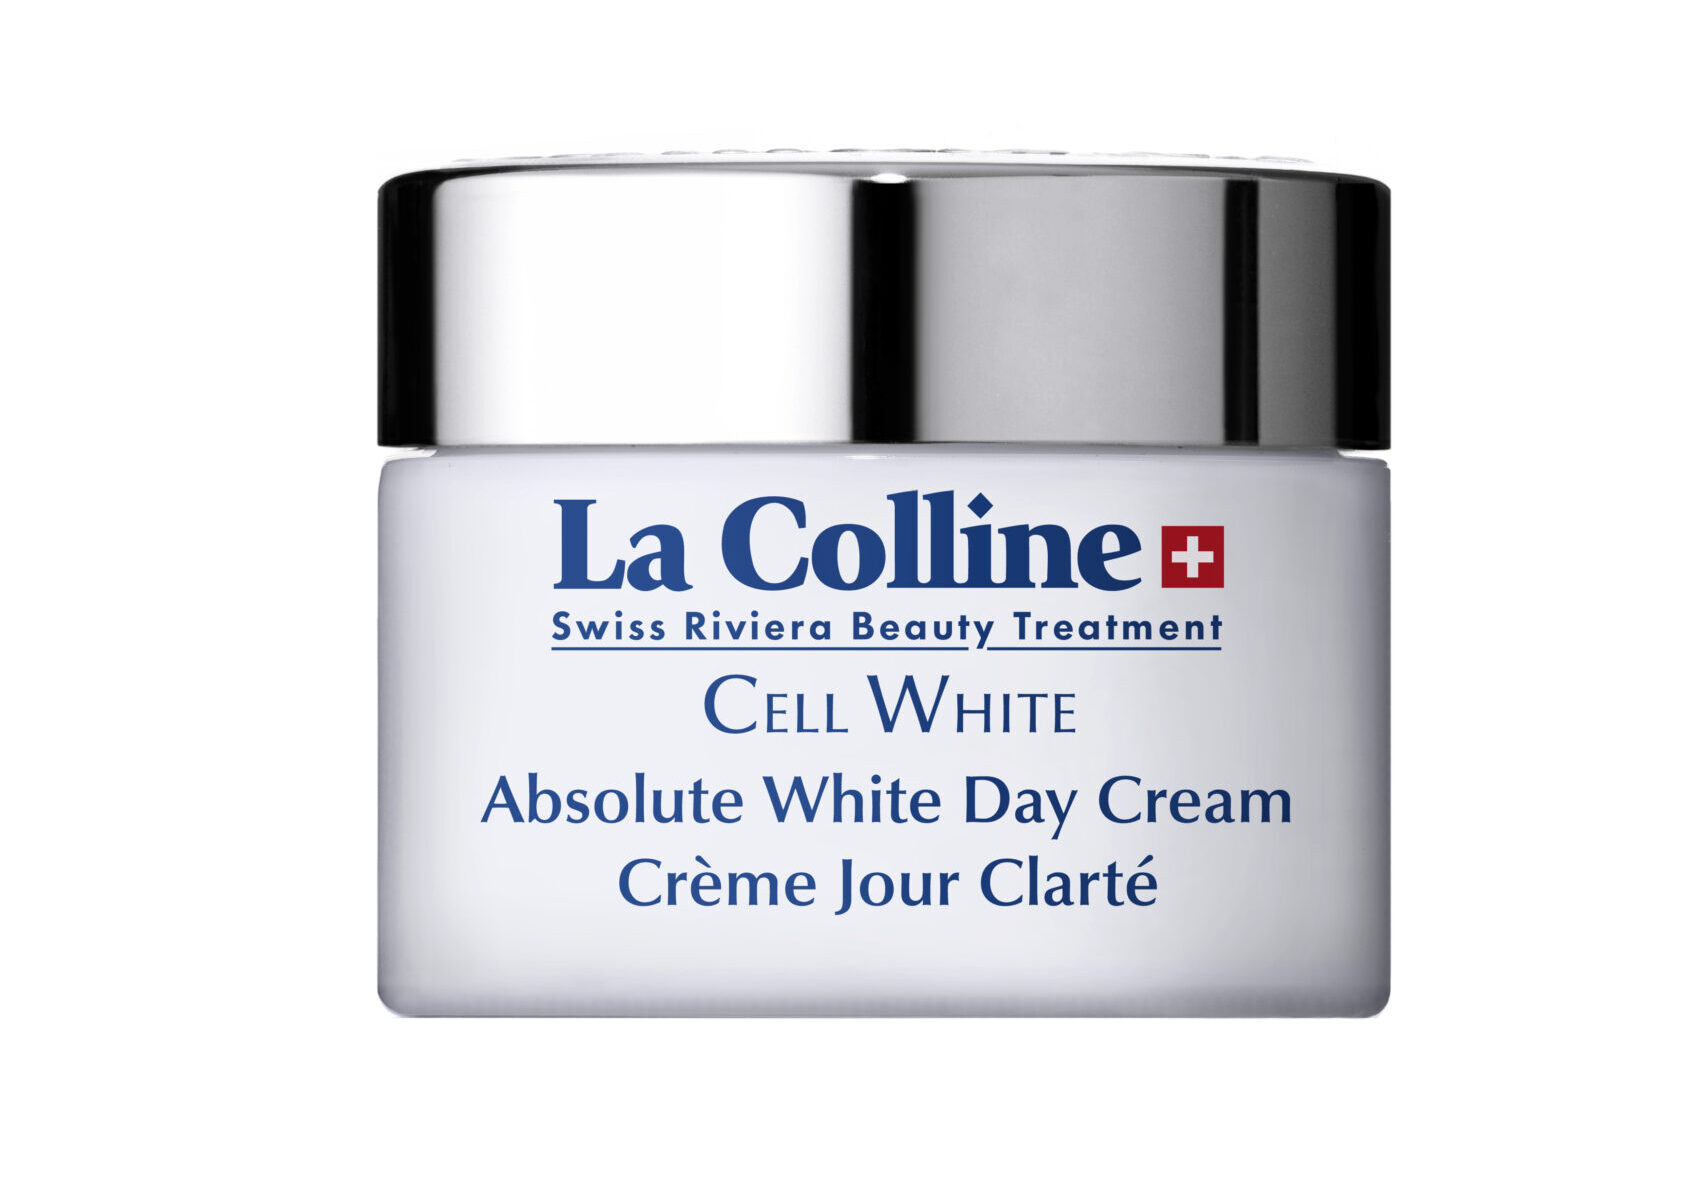 La Colline Cell White Absolute White Day Cream 30 ml | De Beautycoach